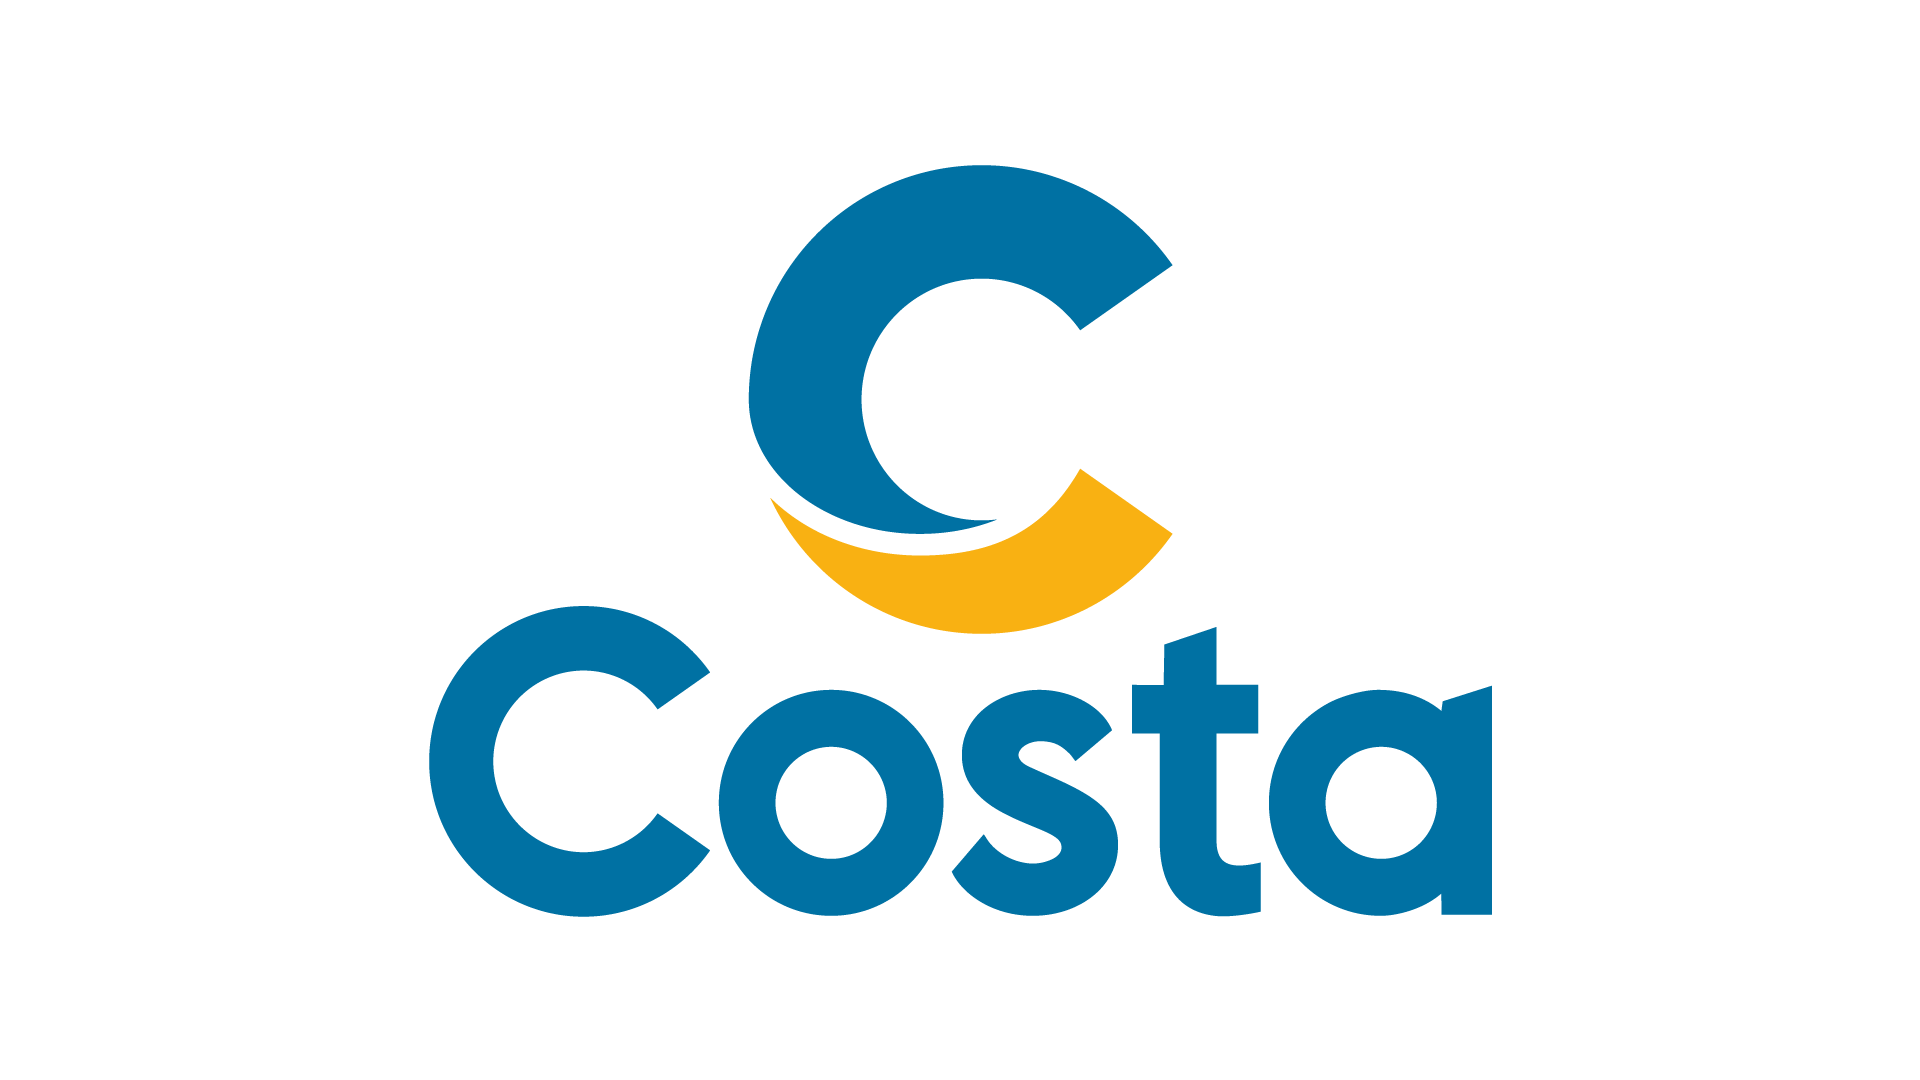 Costa Crociere S.p.A.